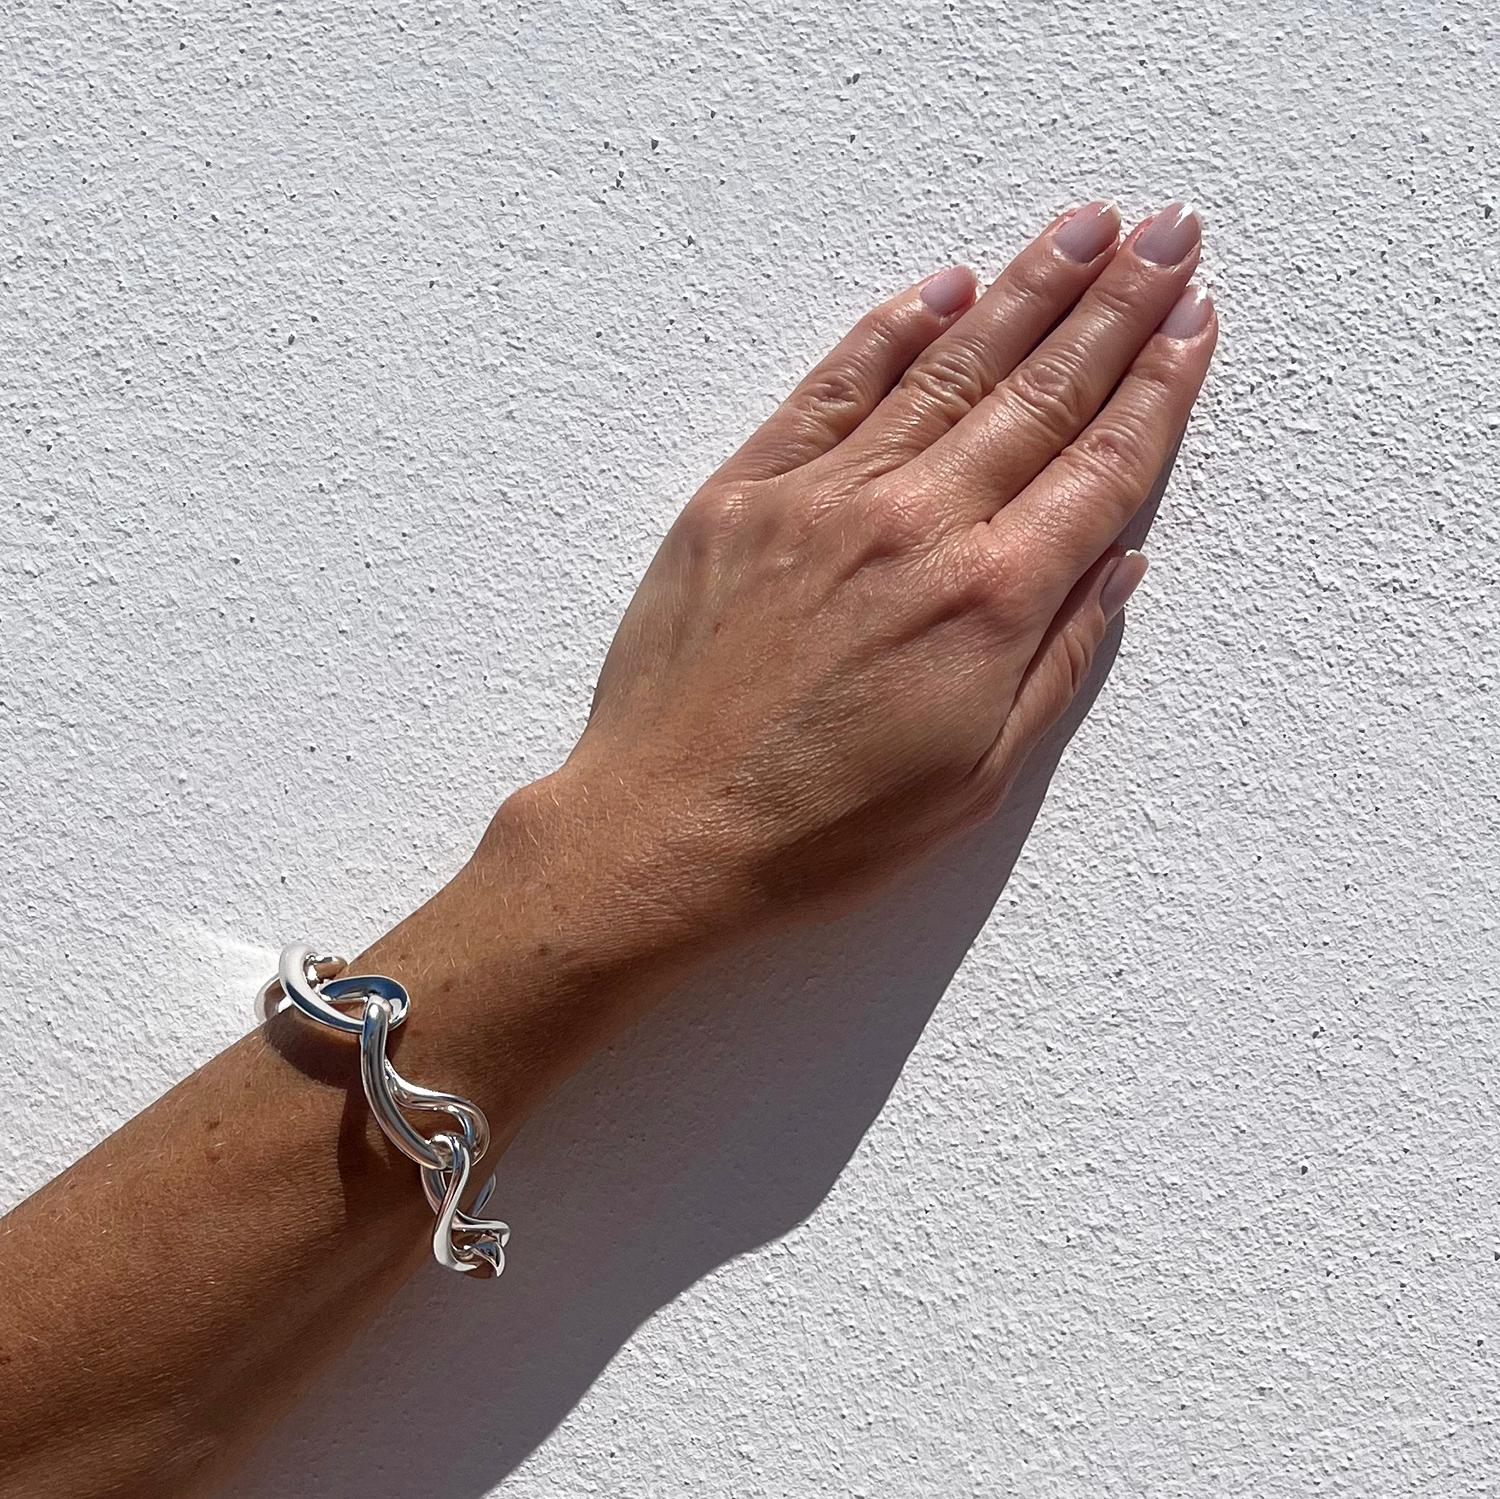 Silver Bracelet “Infinity” by Regitze Overgaard for Georg Jensen For Sale 4